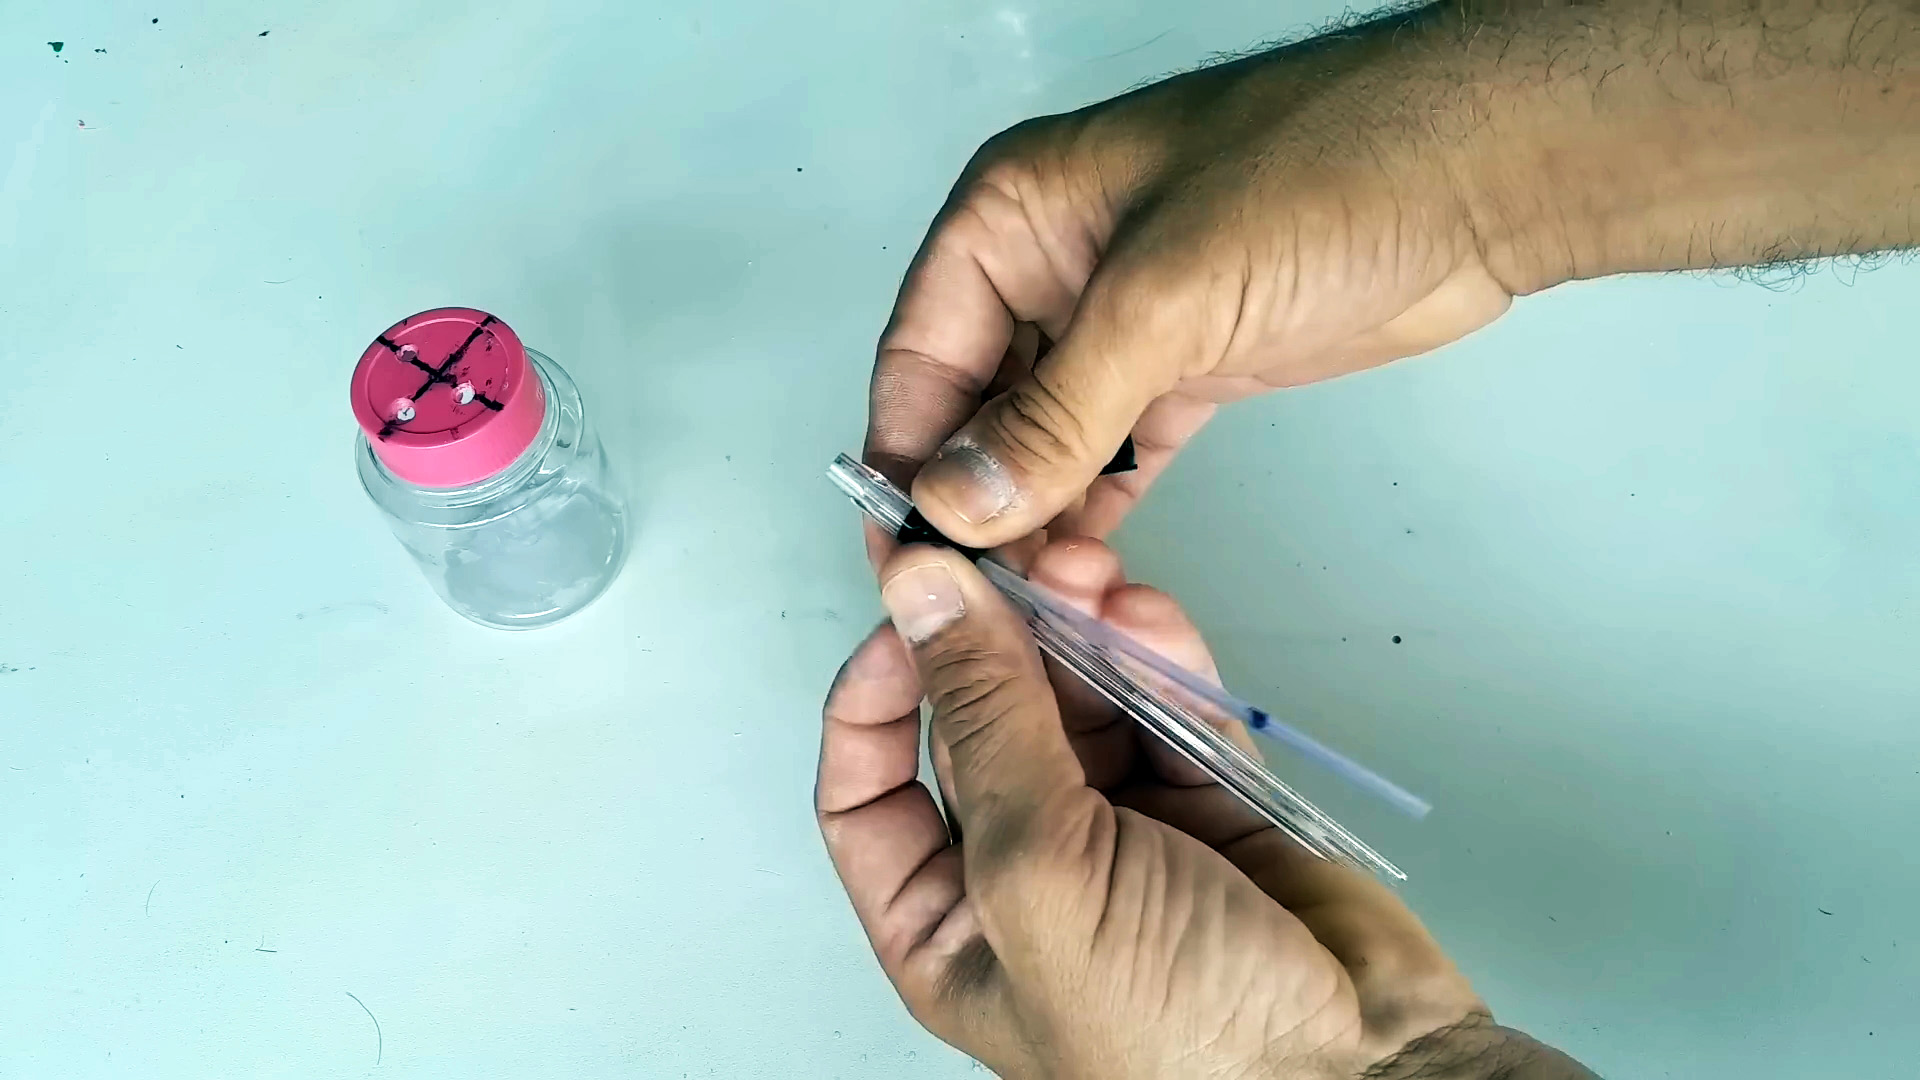 Как сделать мини покрасочный пистолет из шариковой ручки